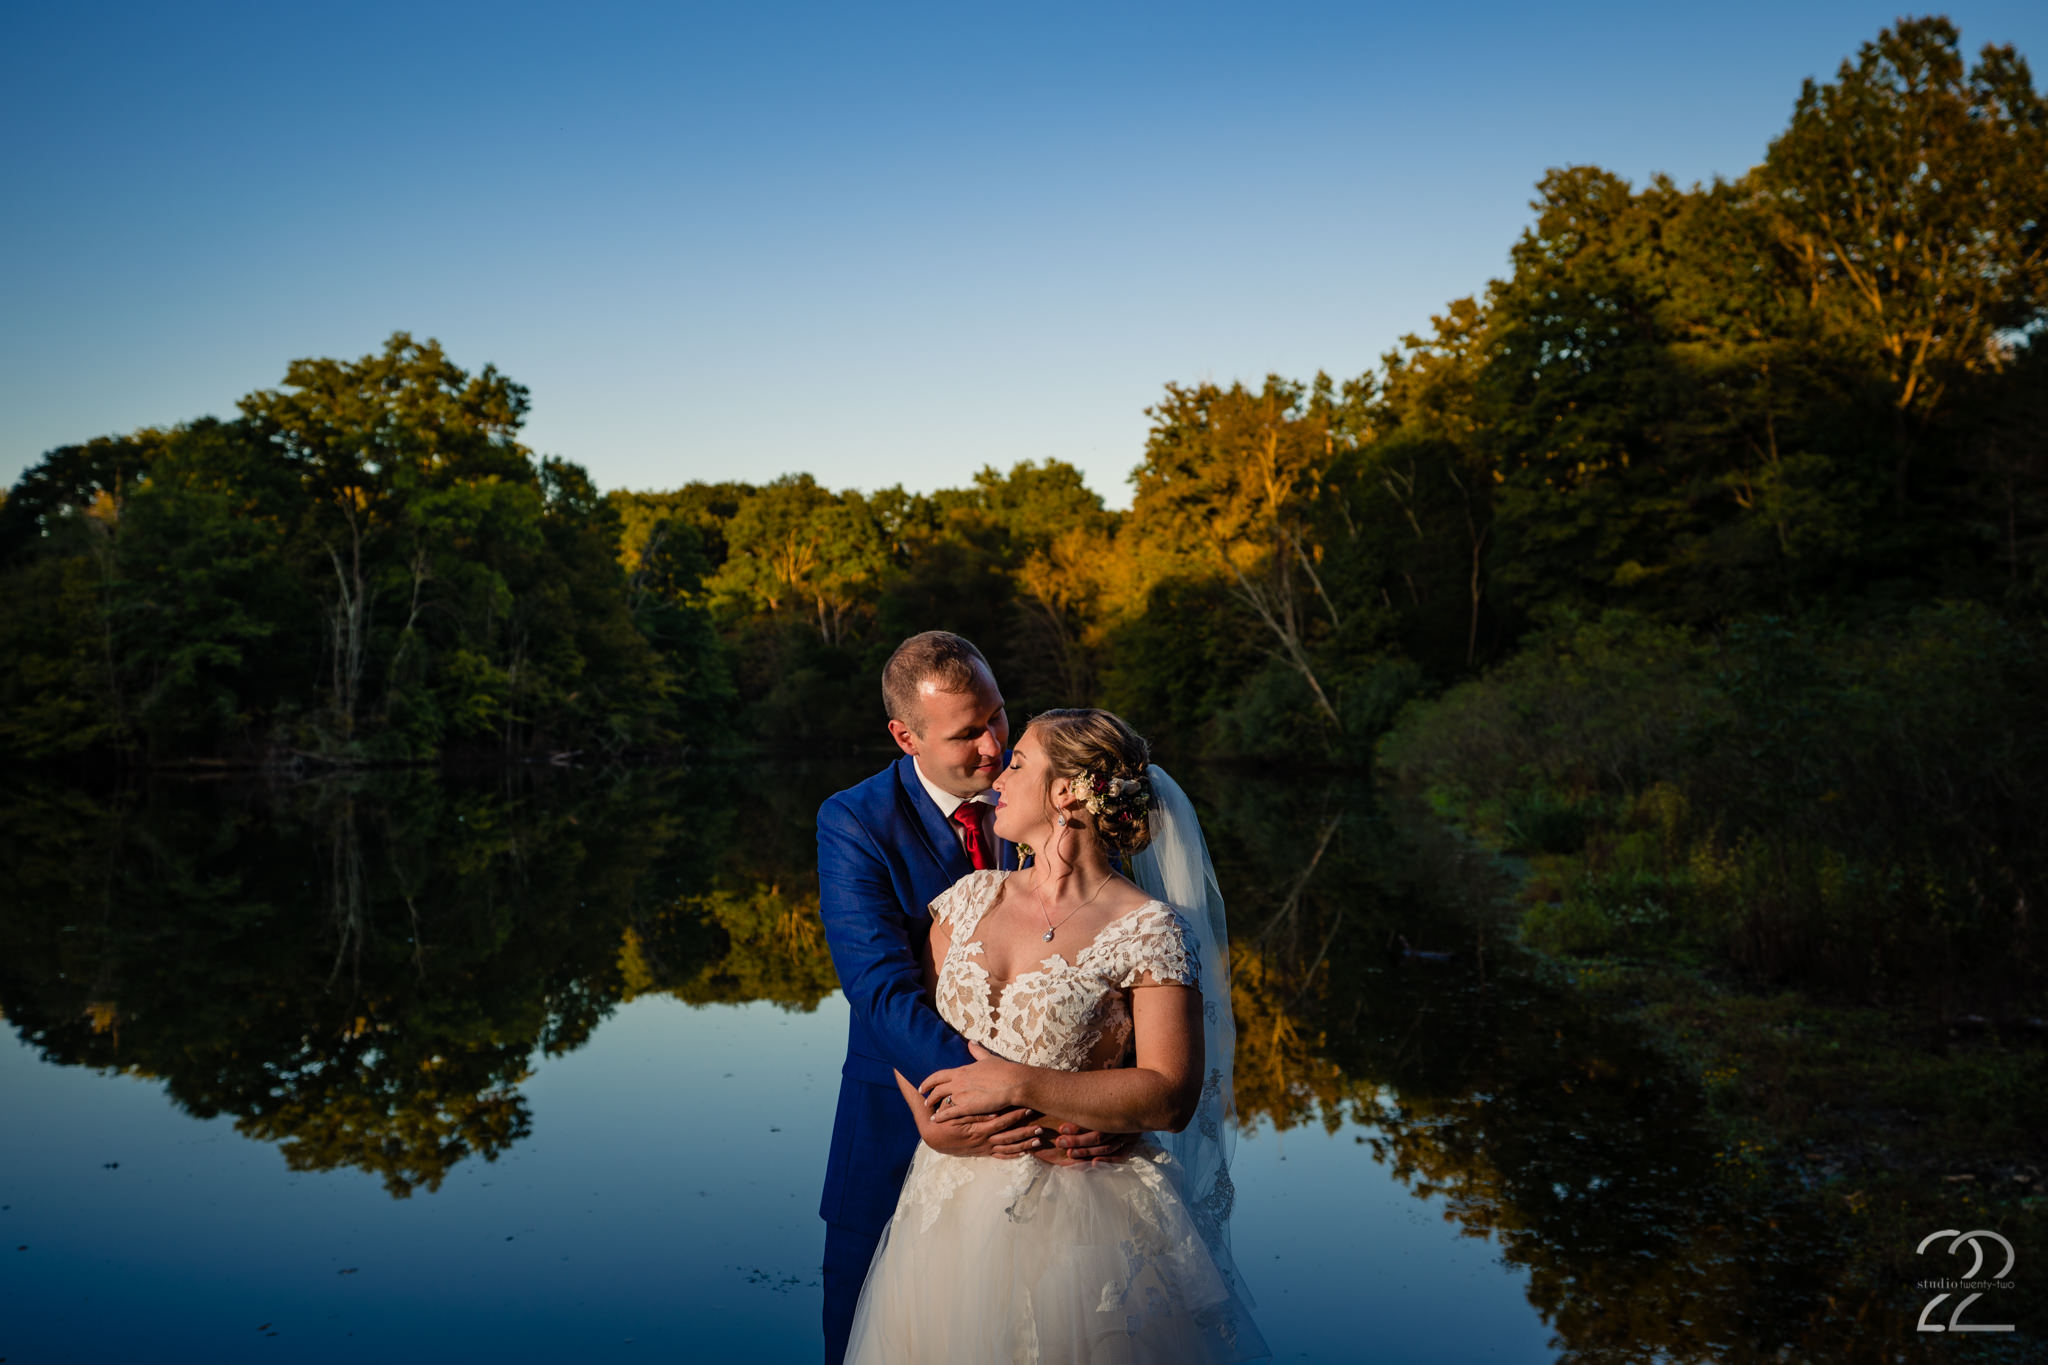 Autumn Weddings - Cincinnati Wedding Photographers - Studio 22 Photography